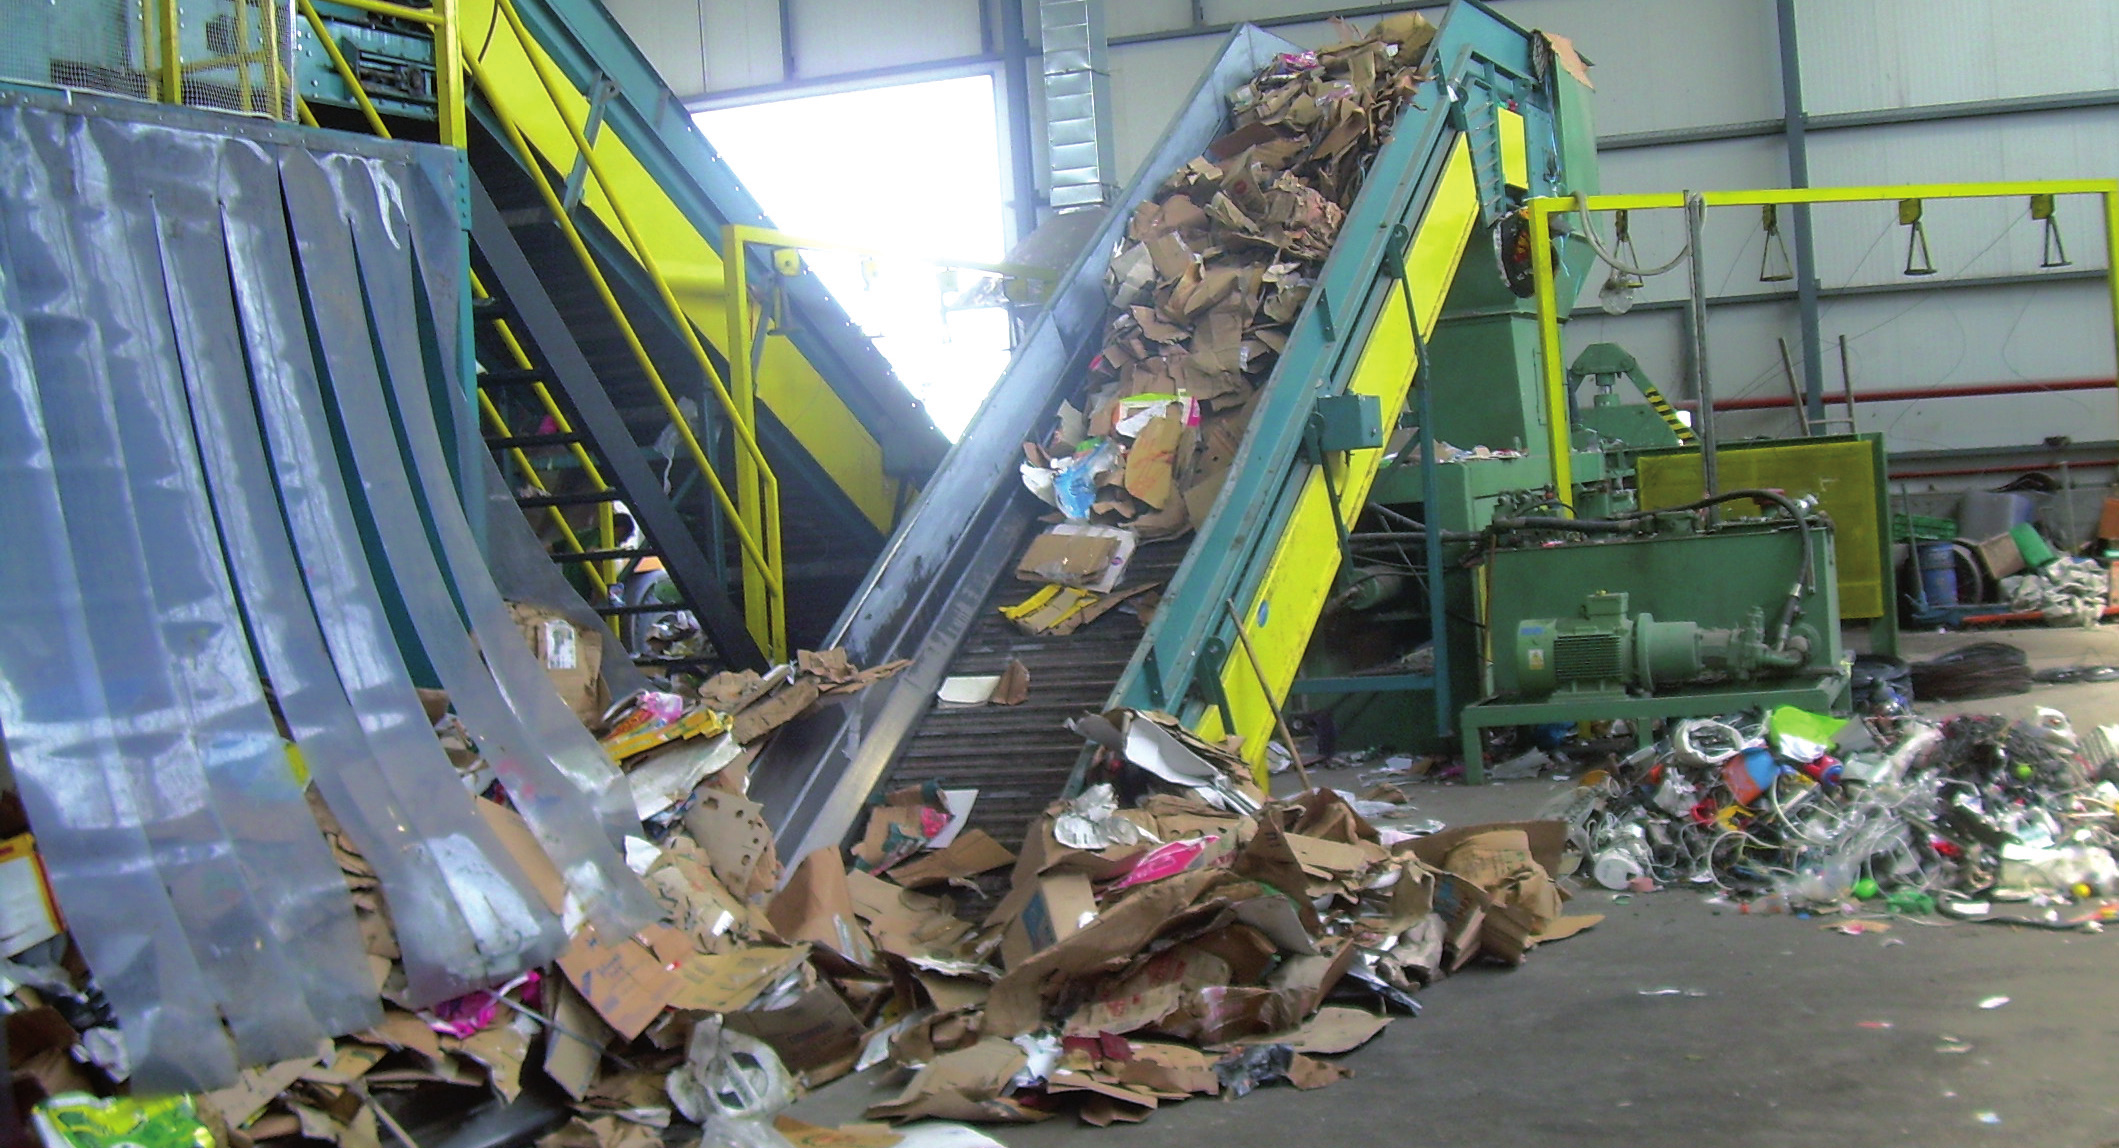 αδει- Παρελήφθησαν την προηγούμενη βδομάδα από το δήμο Τρίπολης οι 500 μπλε κάδοι ανακύκλωσης, καθώς και το ειδικό απορριμματοφόρο για ανακυκλώσιμα υλικά, όπως προβλεπόταν και στη σύμβαση που